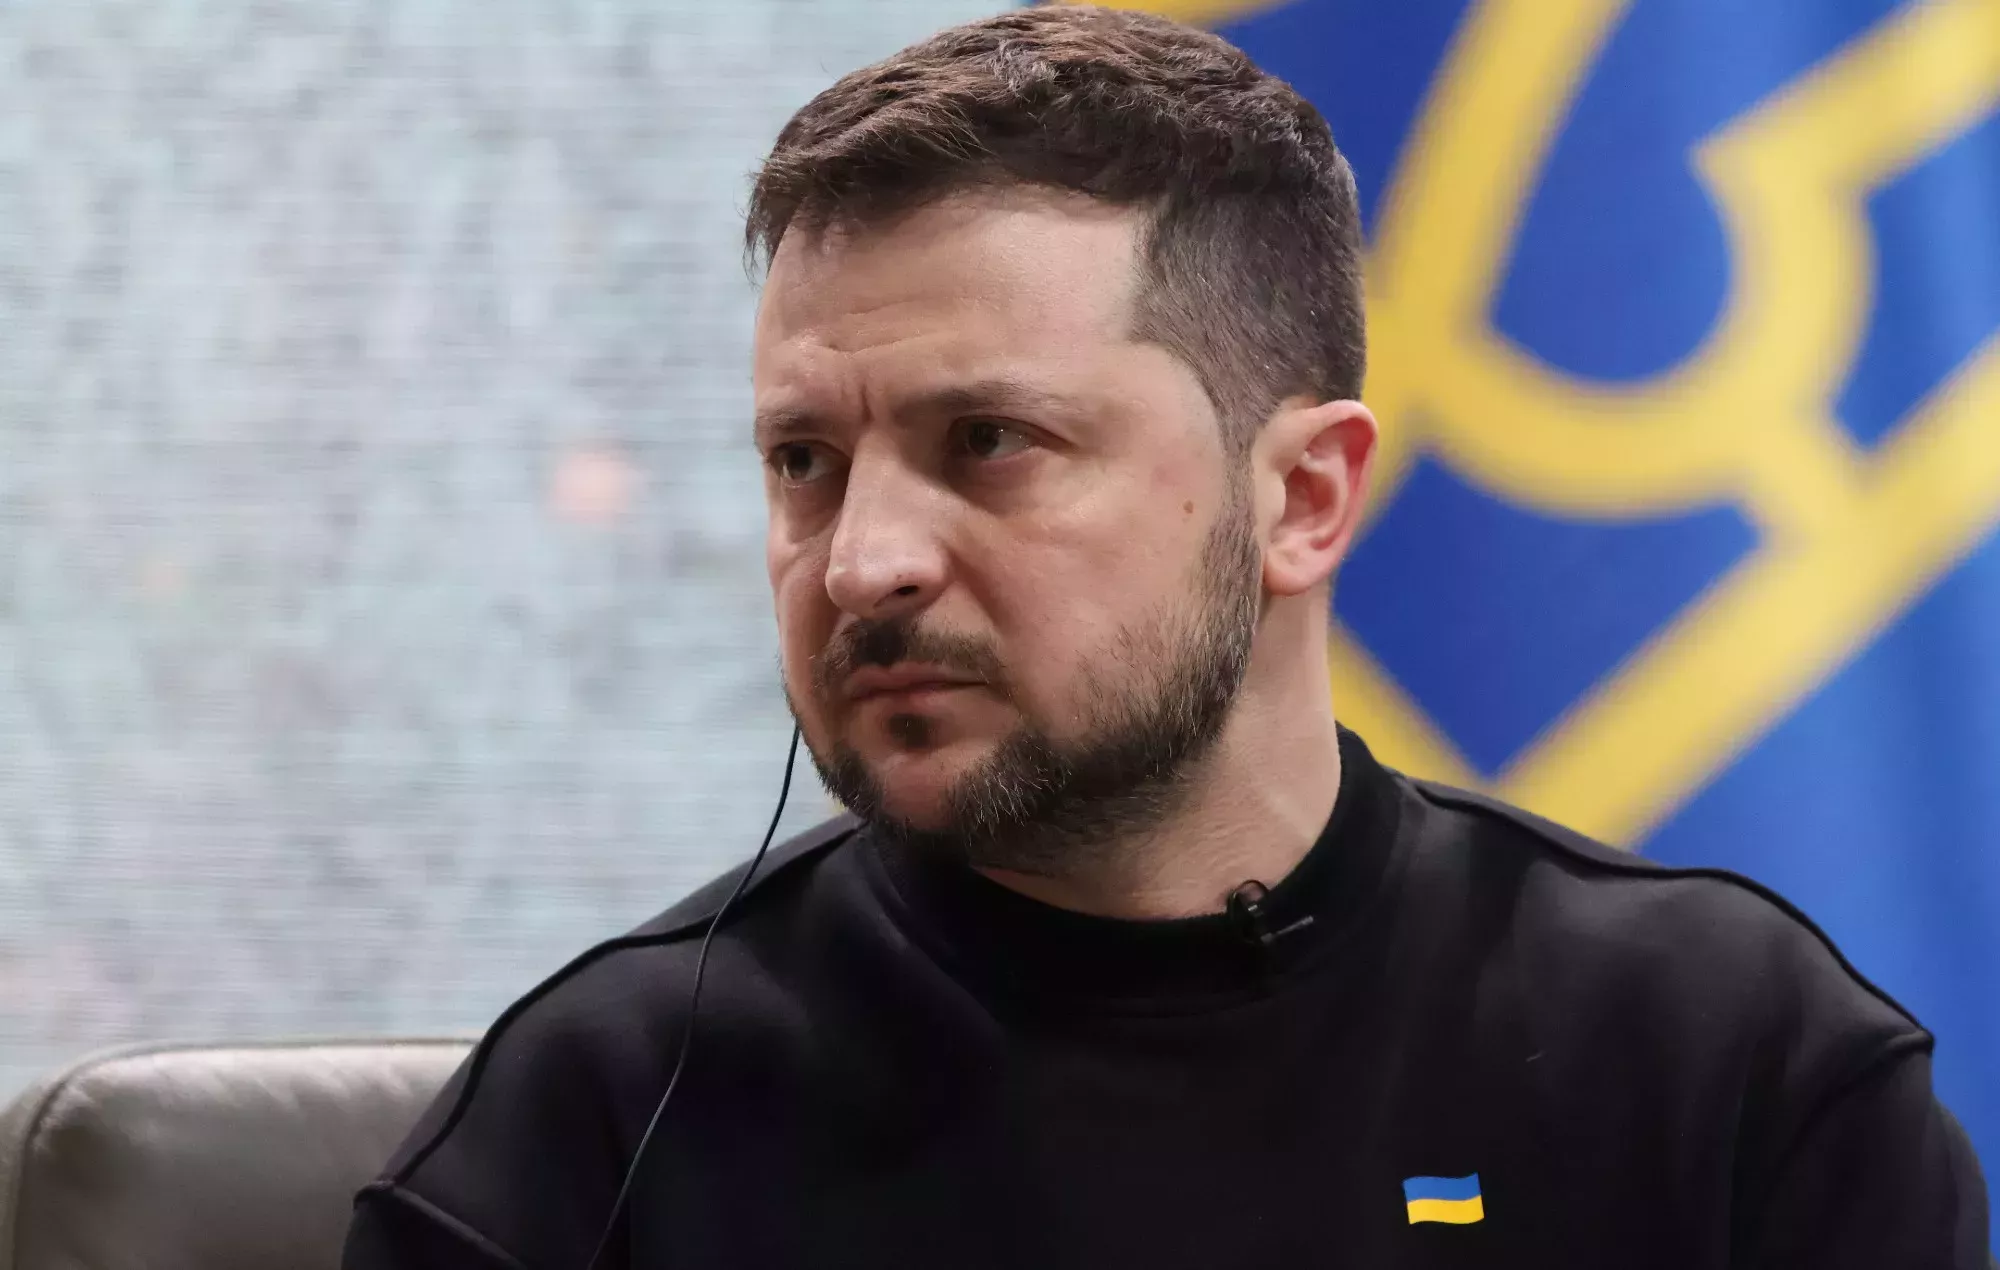 Los Oscar rechazan que el presidente ucraniano Volodymyr Zelenskyy hable durante la ceremonia de 2023